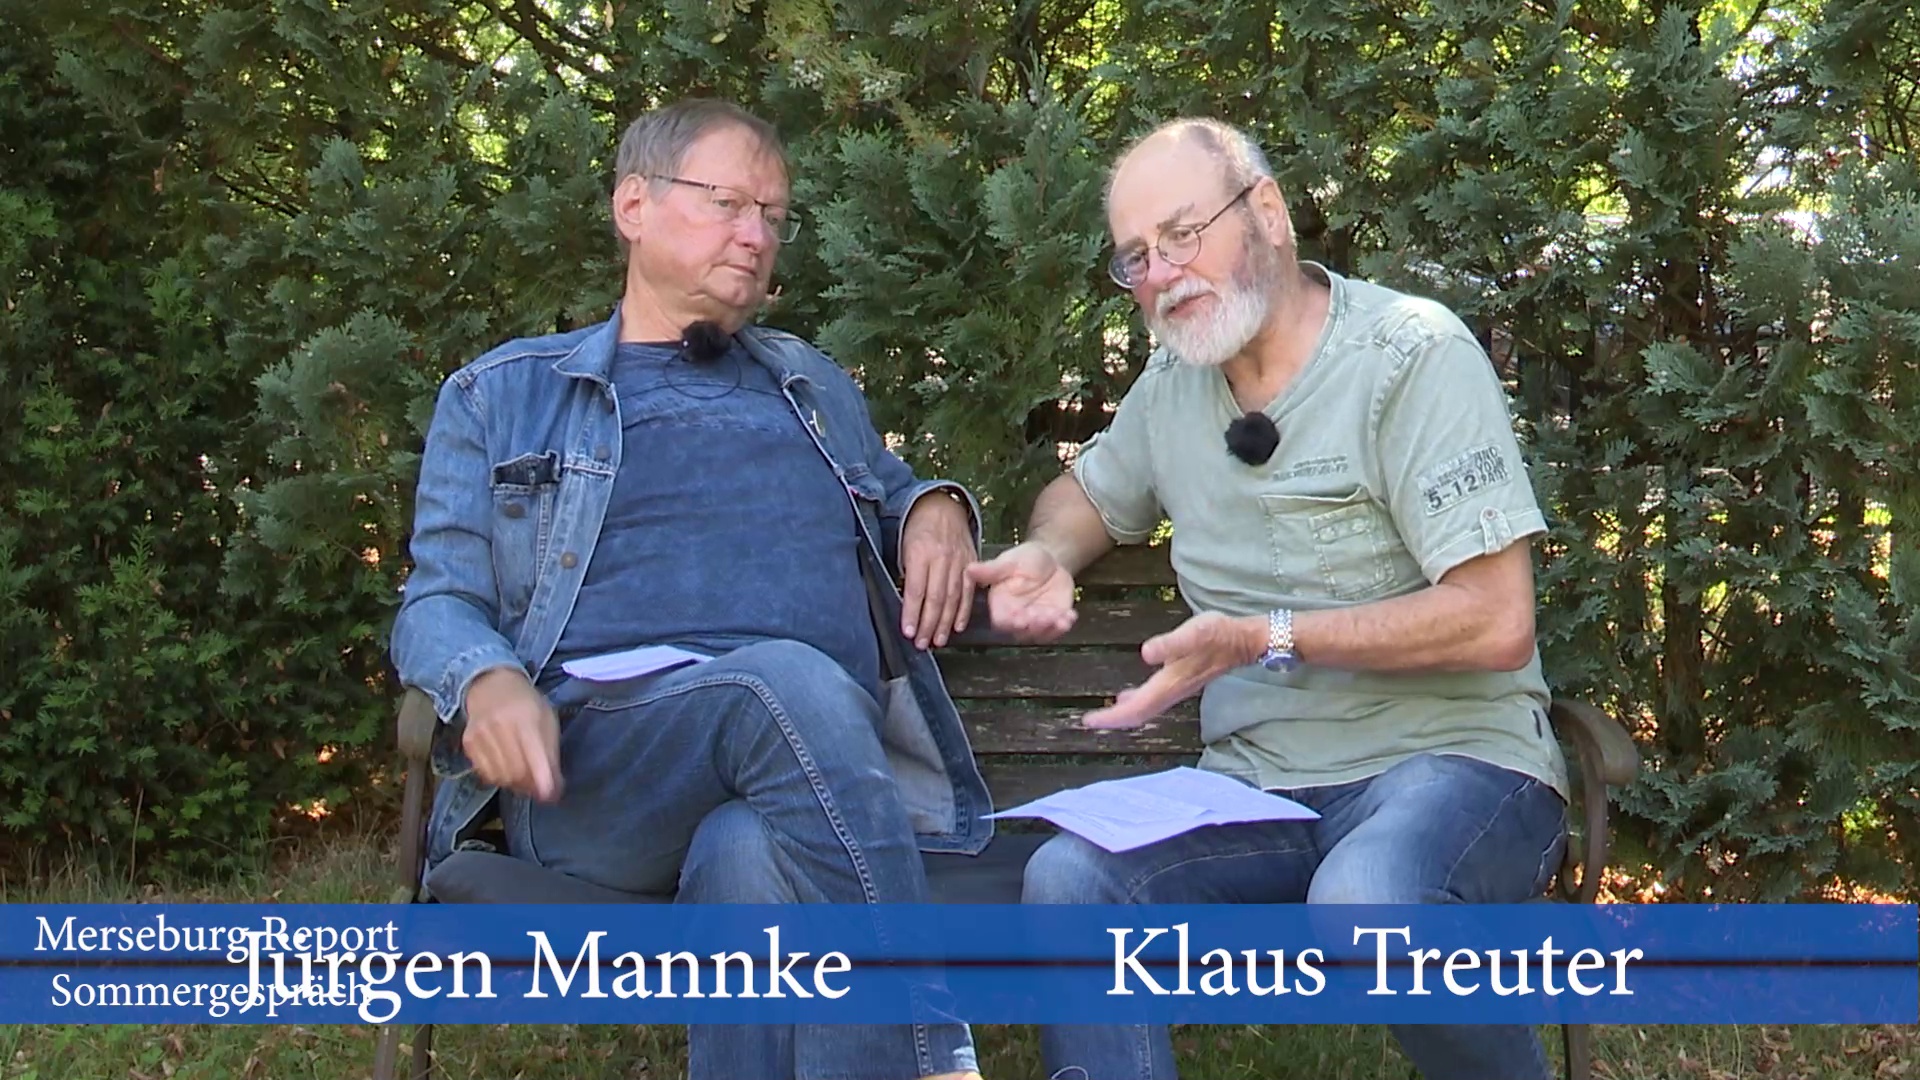 Merseburg Report: Klaus Treuter im Sommergespräch mit Jürgen Mannke